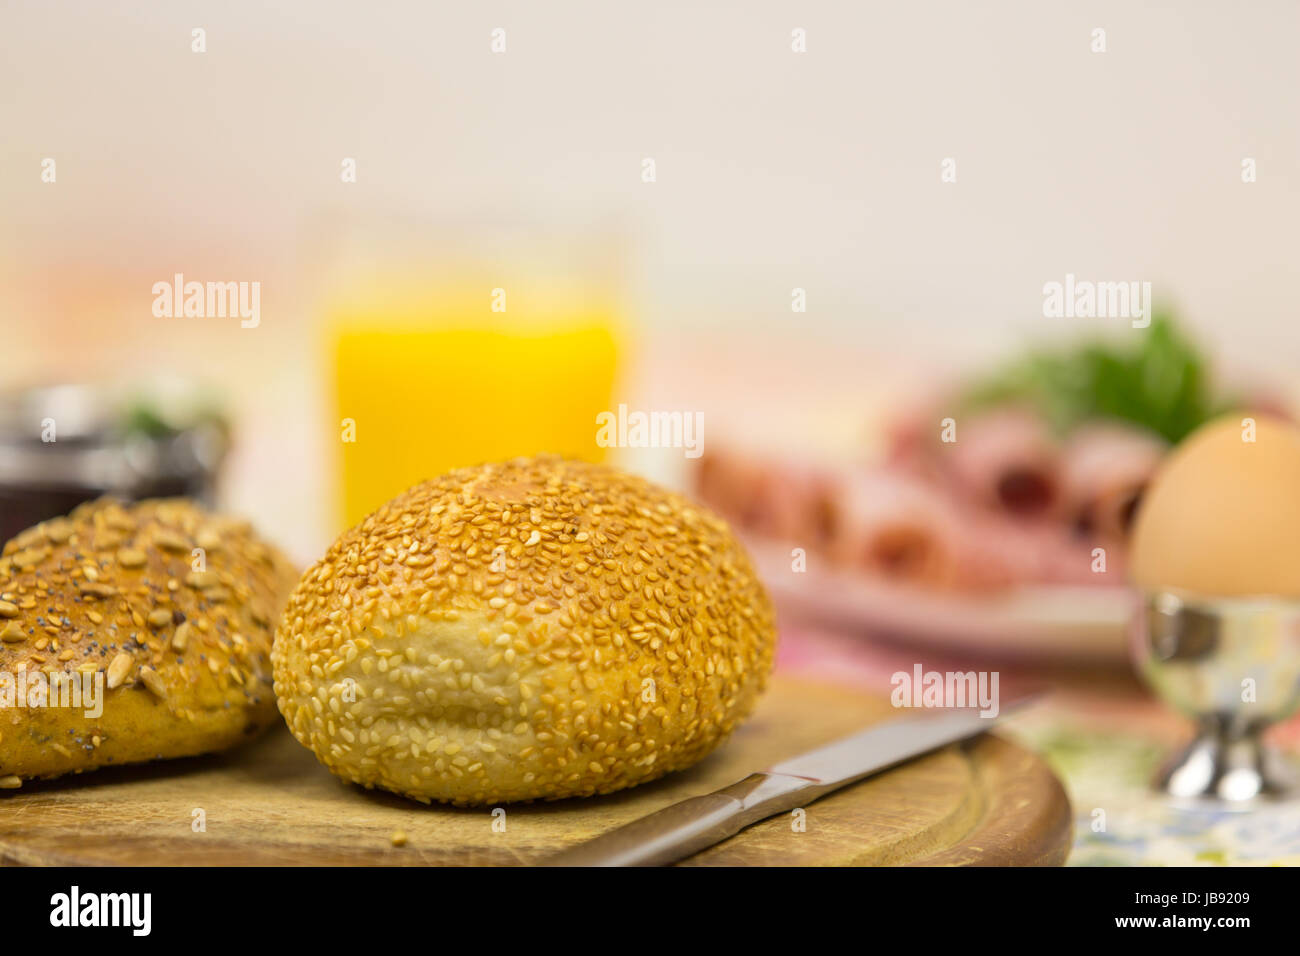 Frühstück mit Sesambrötchen, Croissant, Ei und Aufschnitt Stock Photo